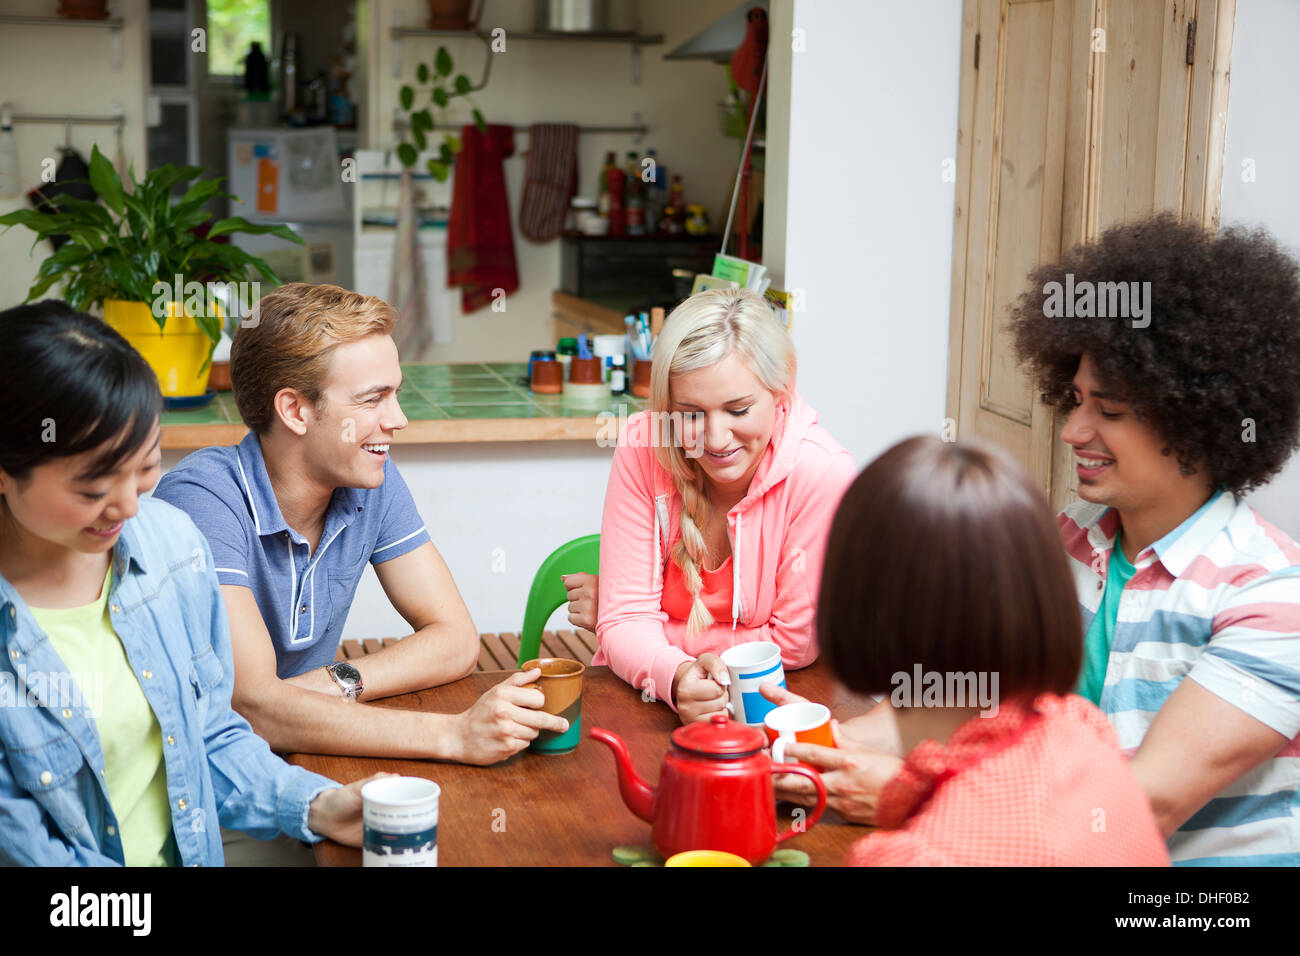 Groupe de jeunes amis discutant autour d'une table de cuisine Banque D'Images